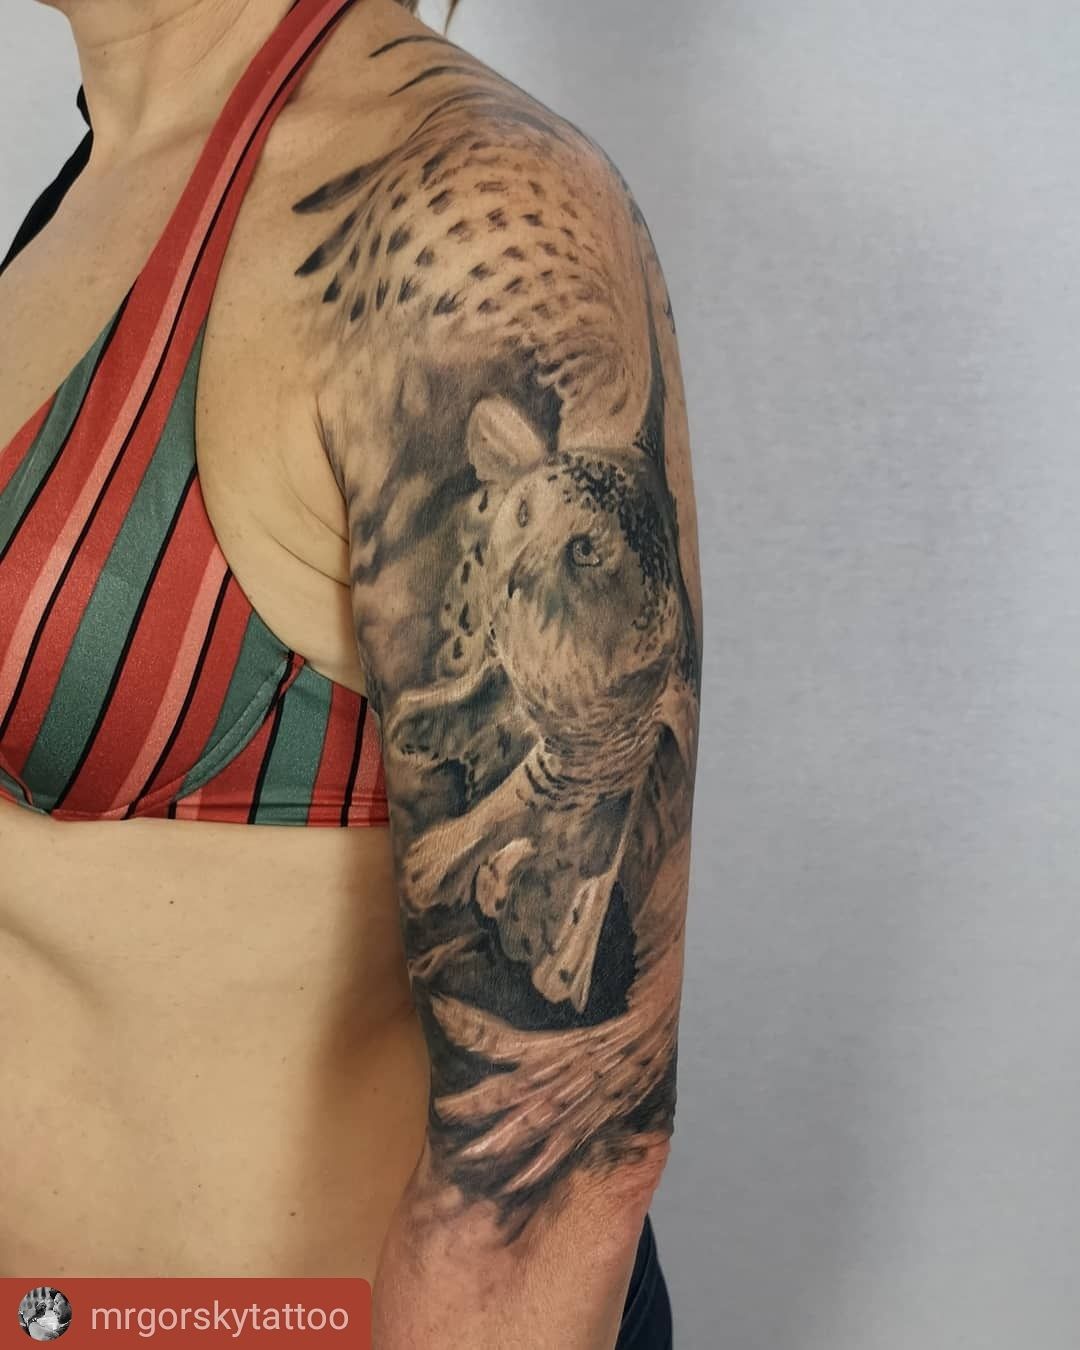 Állat tetoválás, Fantázia tetoválás, Fekete fehér tetoválás, Felkar tetoválás, Madár tetoválás, Realisztikus tetoválás, Szimbólumok, Váll tetoválás